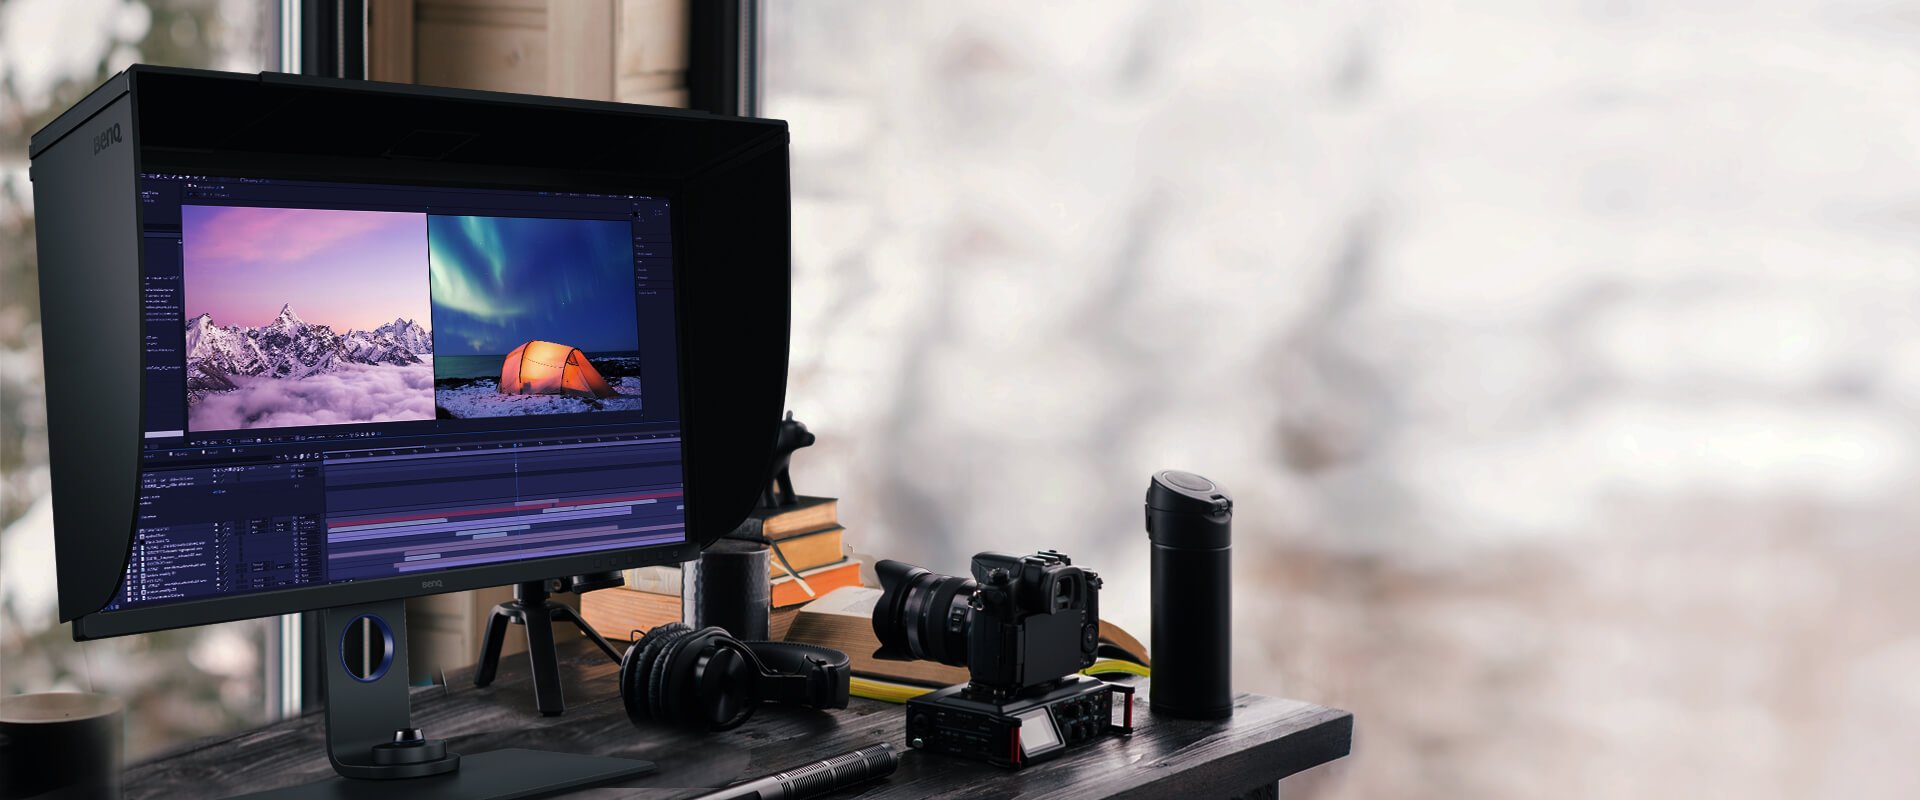 Le SW271C aide les professionnels à obtenir les meilleurs résultats grâce à la prise en charge de plusieurs formats vidéo, dont HDR